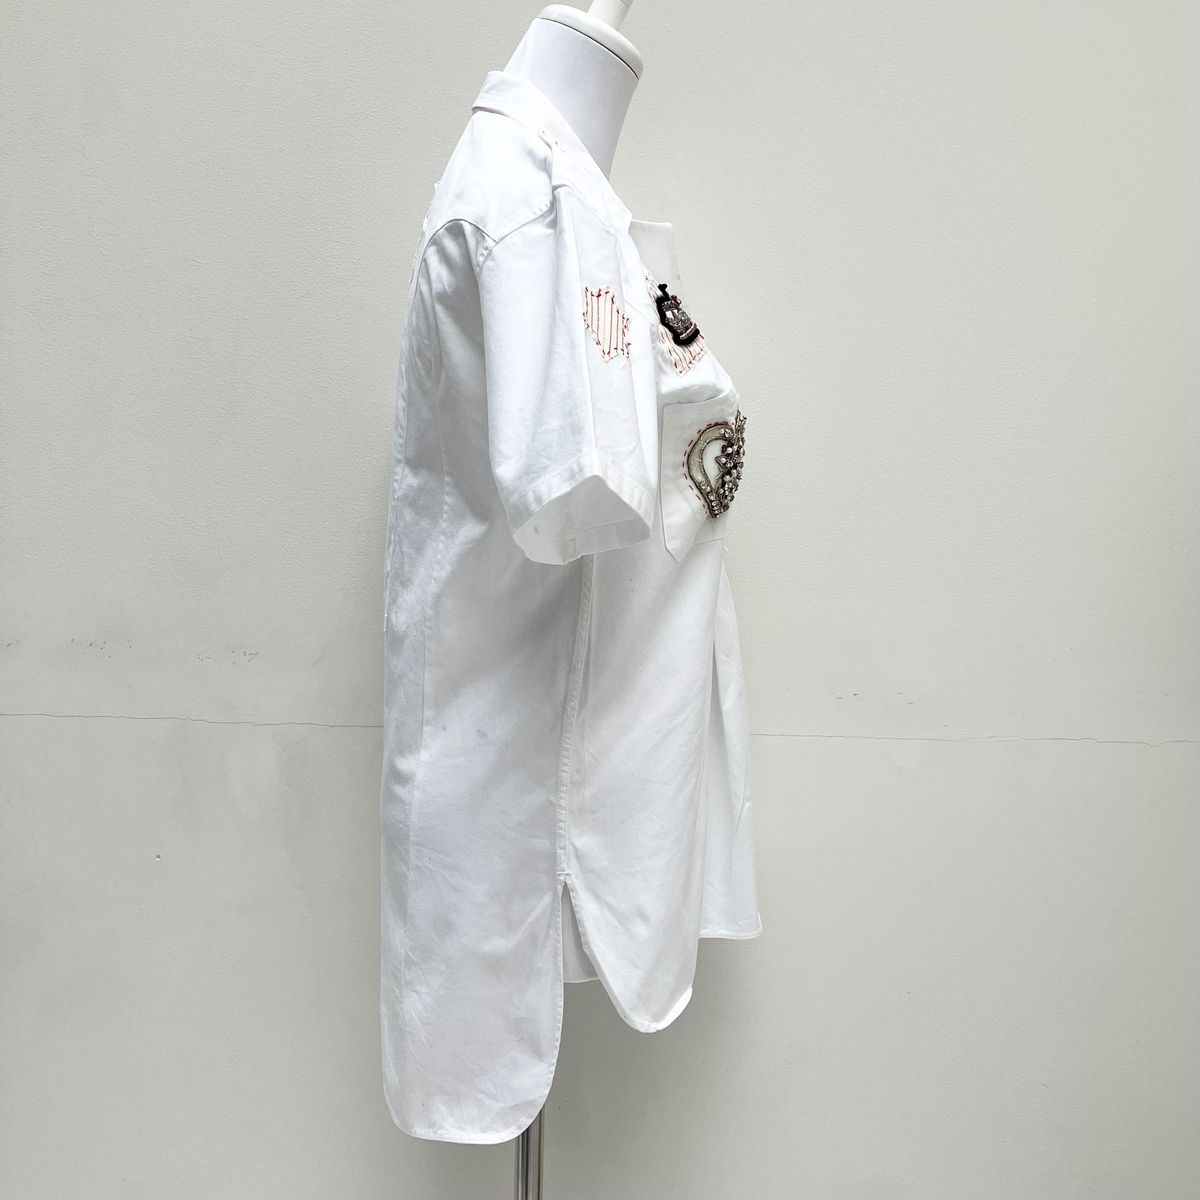 【サンフレール】半袖 シャツ ホワイト 白 刺繍 ラインストーン ビーズ パール 襟付き コットン イタリア製